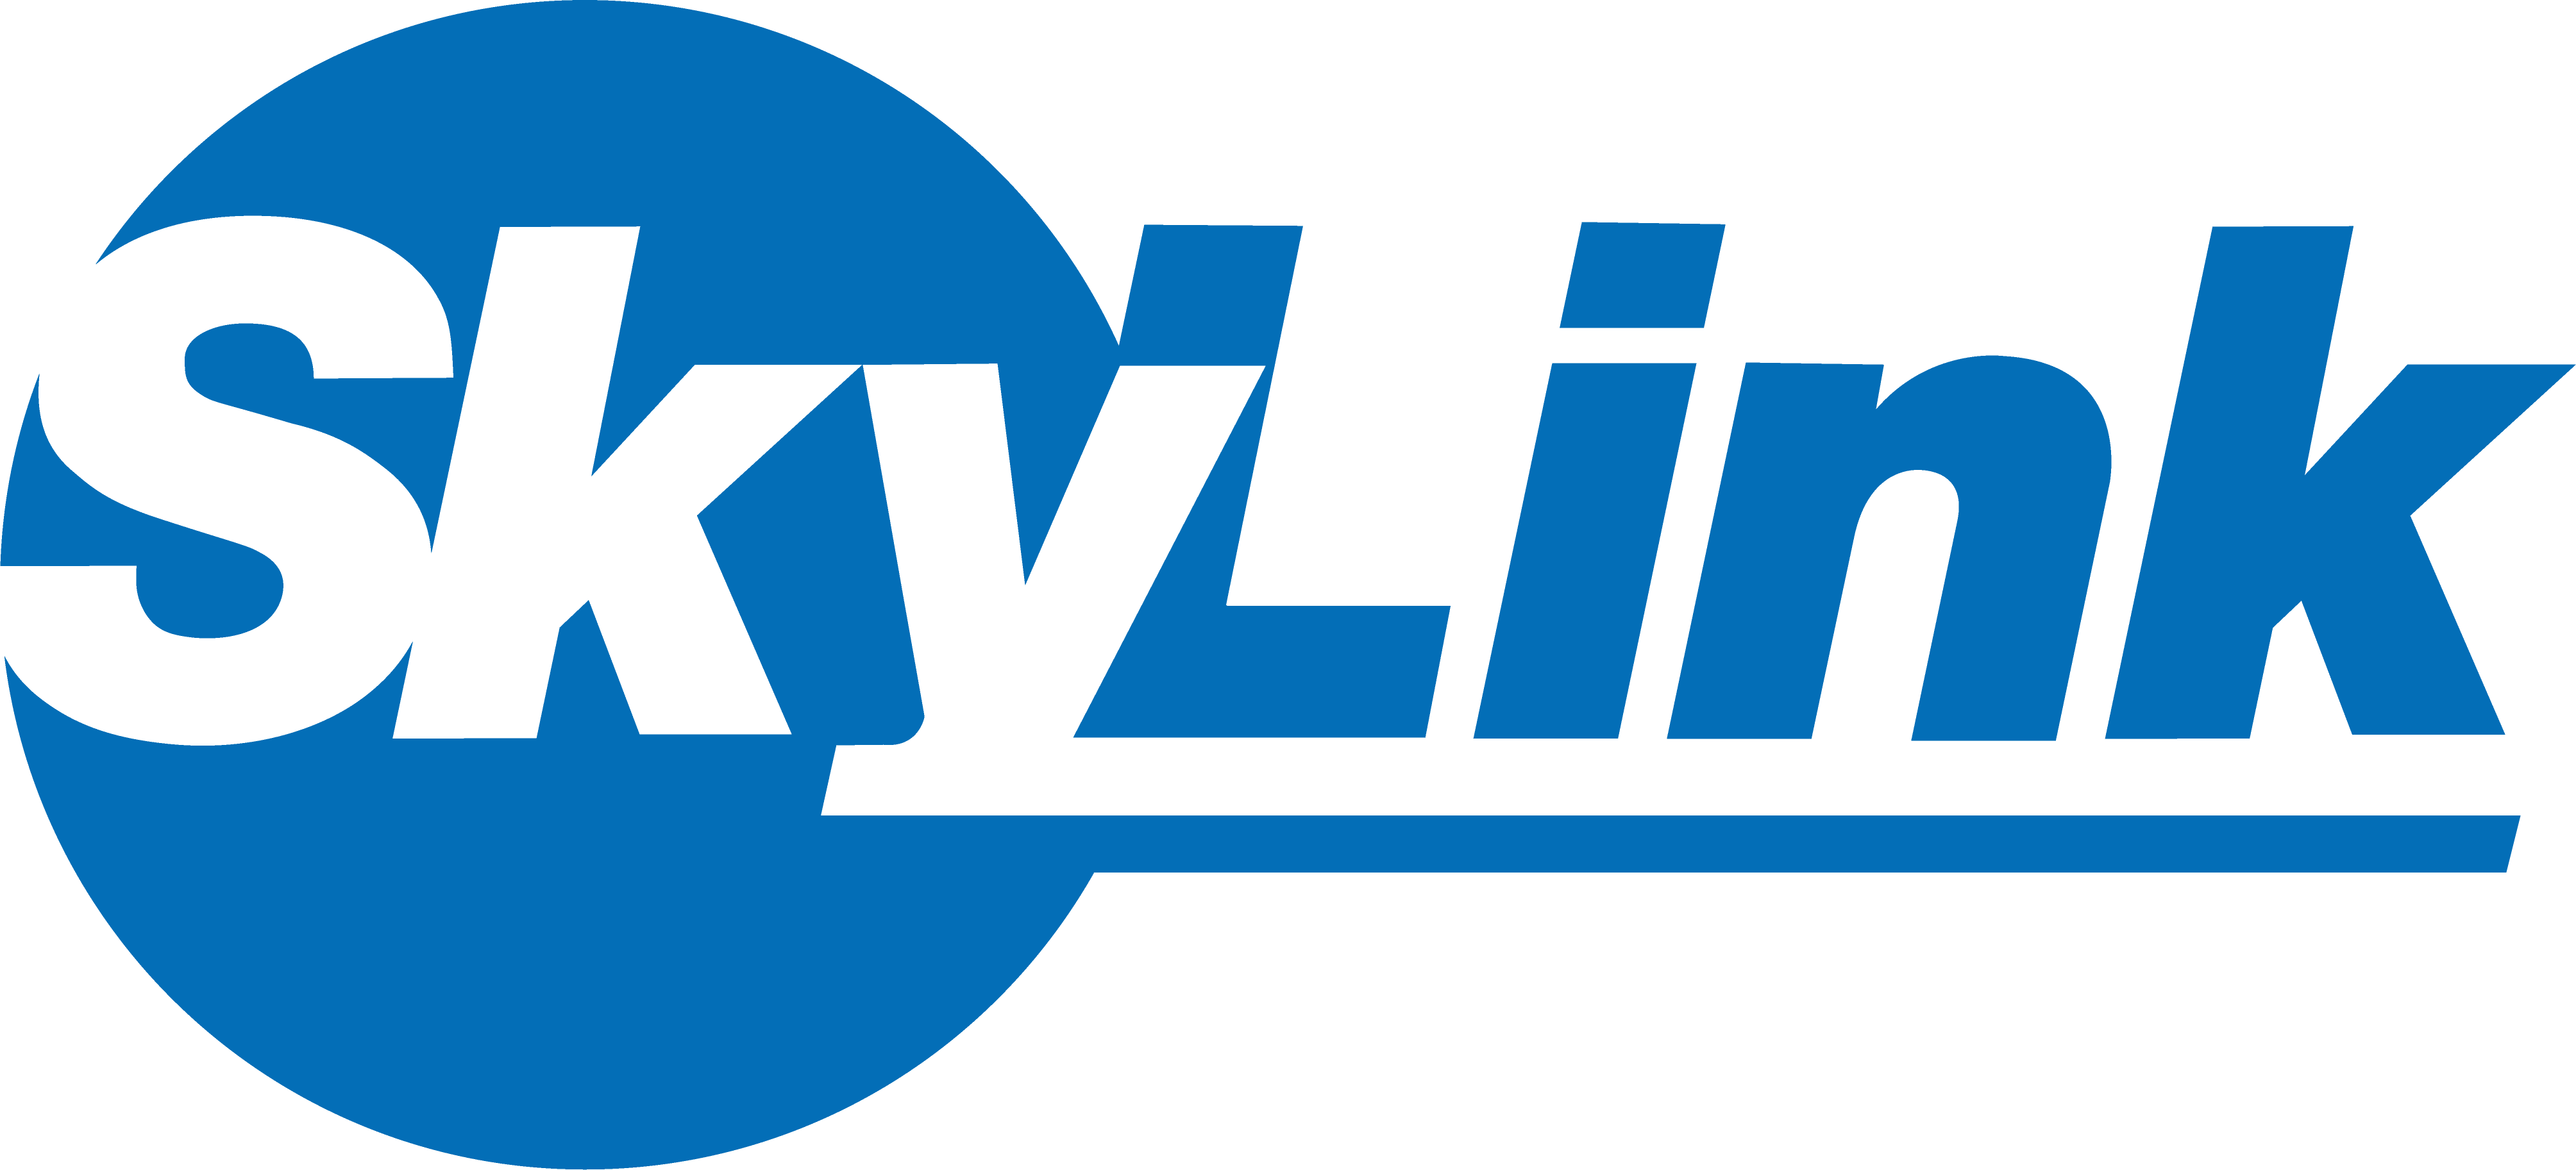 SkyLink_logo.Blue.png